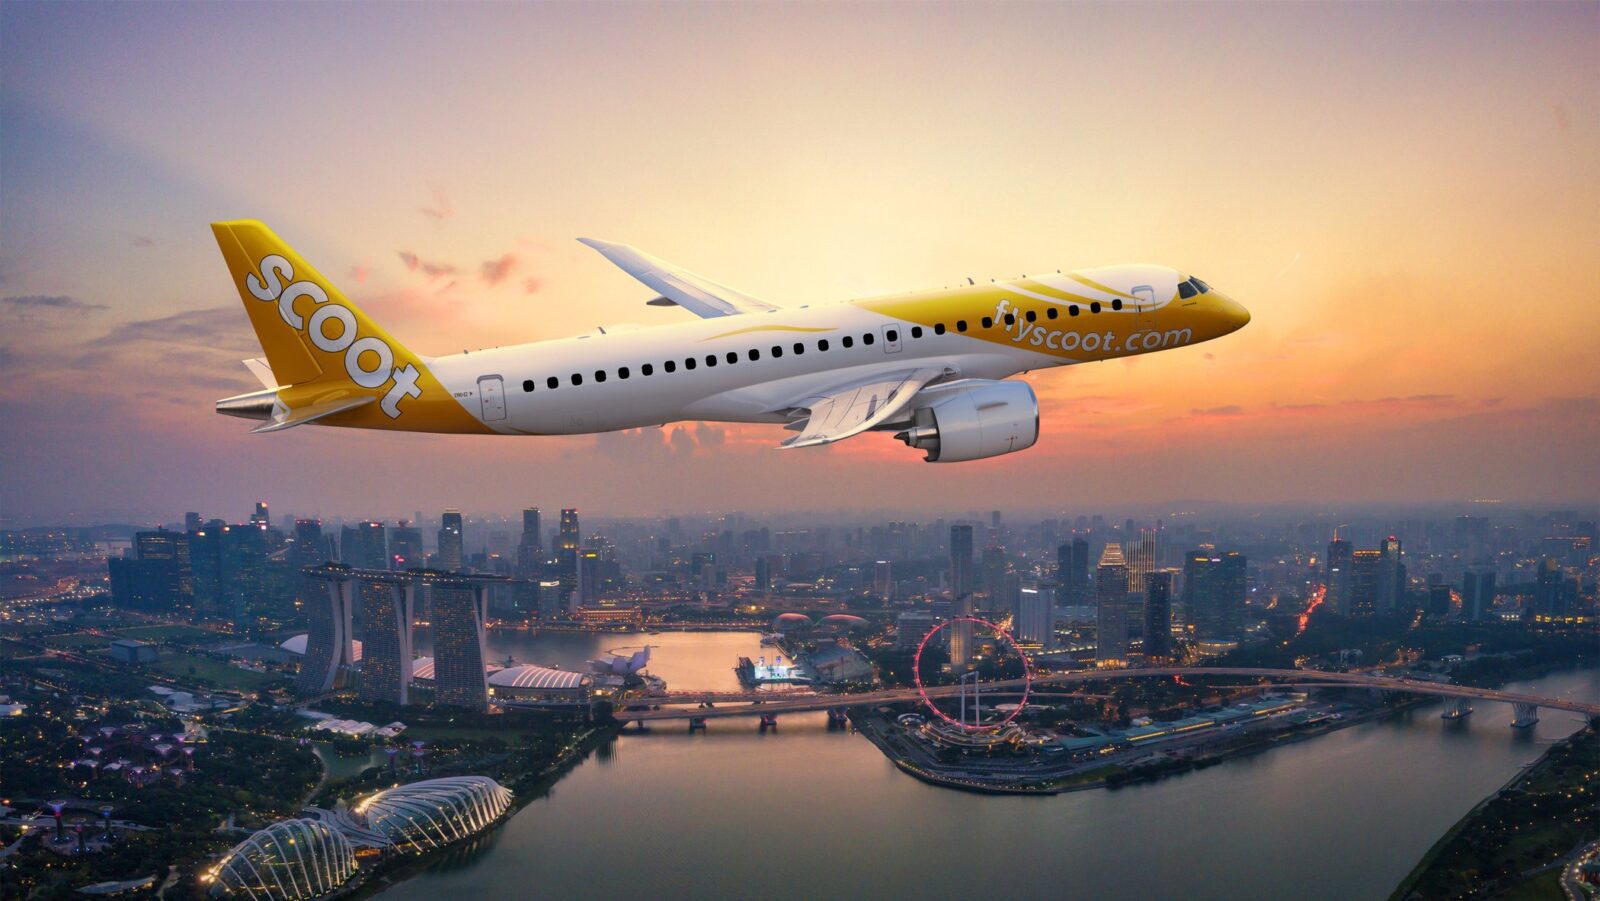 Embraer E190-E2 and E195-E2 attains Civil Aviation Authority of Singapore type certification